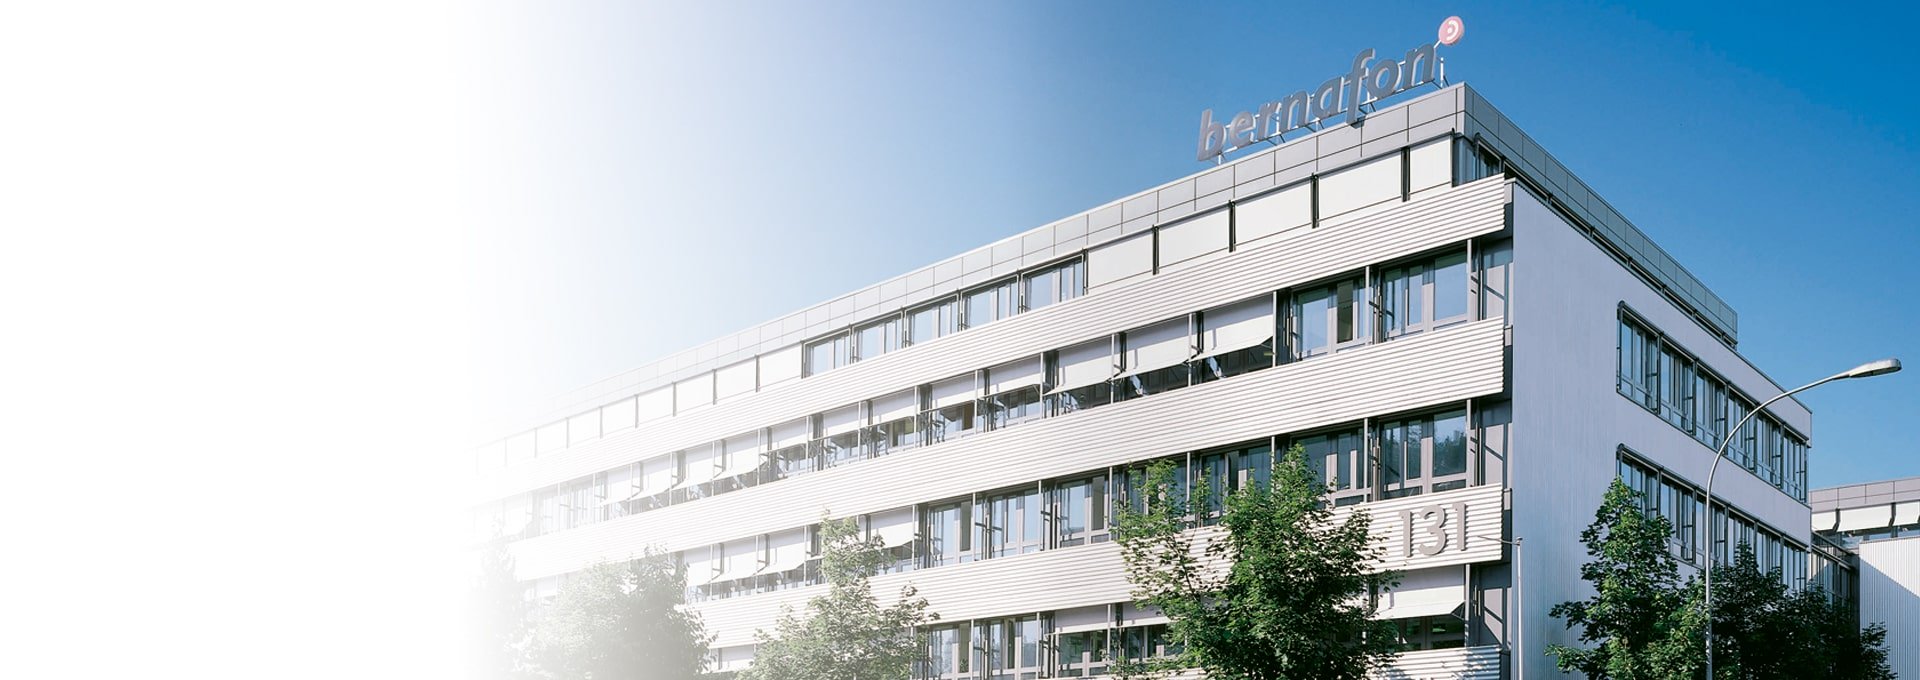 Foto van het hoofdkantoor van Bernafon in Bern, Zwitserland, op een zonnige dag